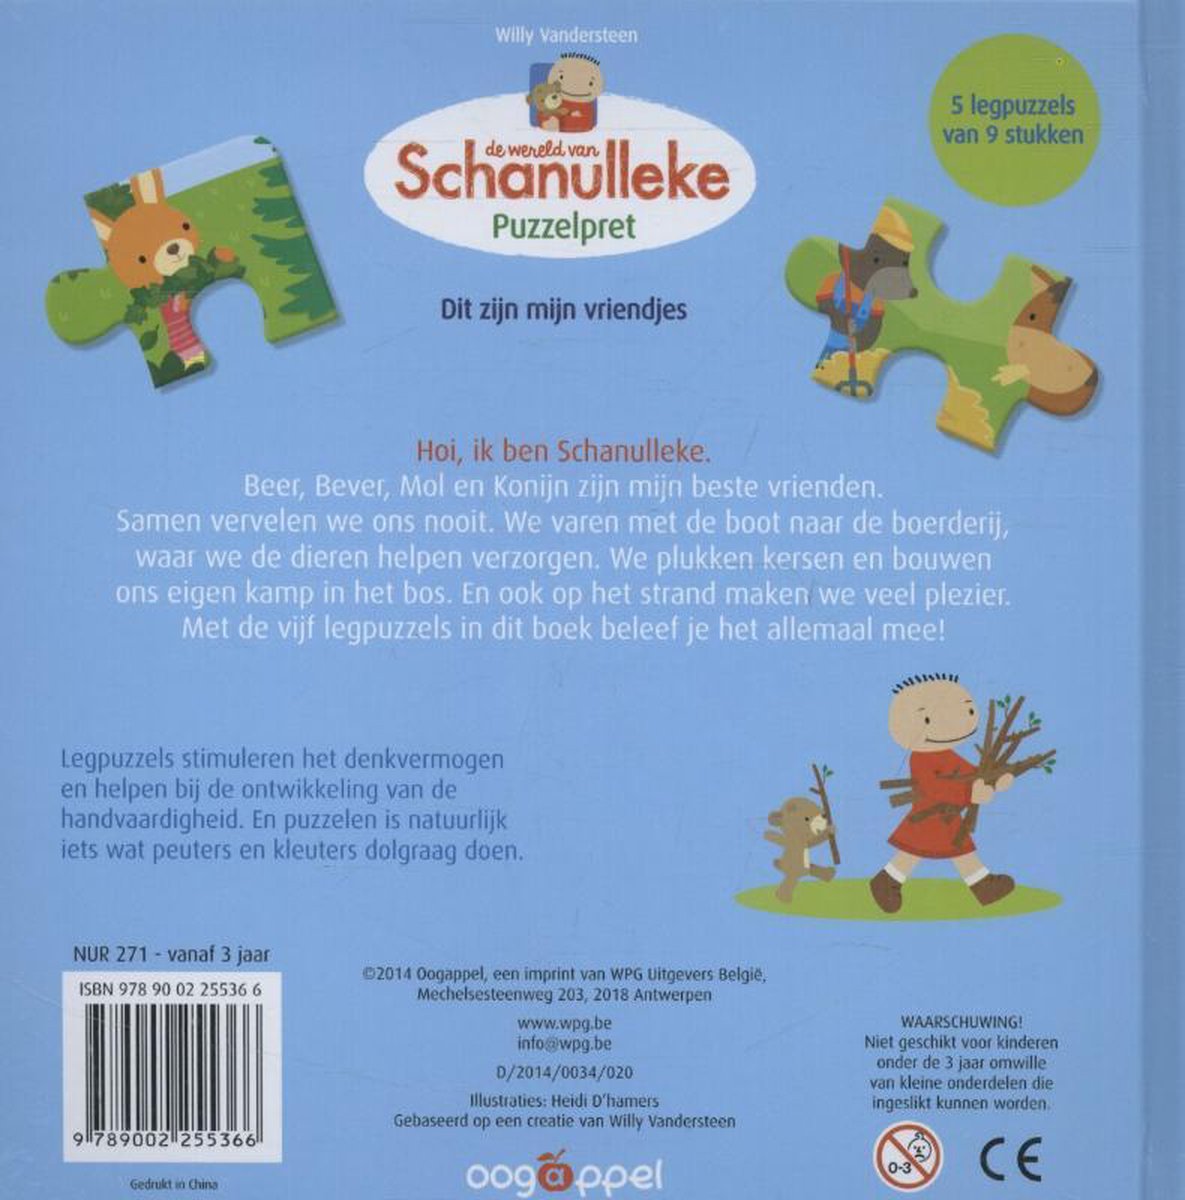 Schanulleke - De wereld van Schanulleke puzzelpret, Vandersteen Willy |  9789002255366... | bol.com